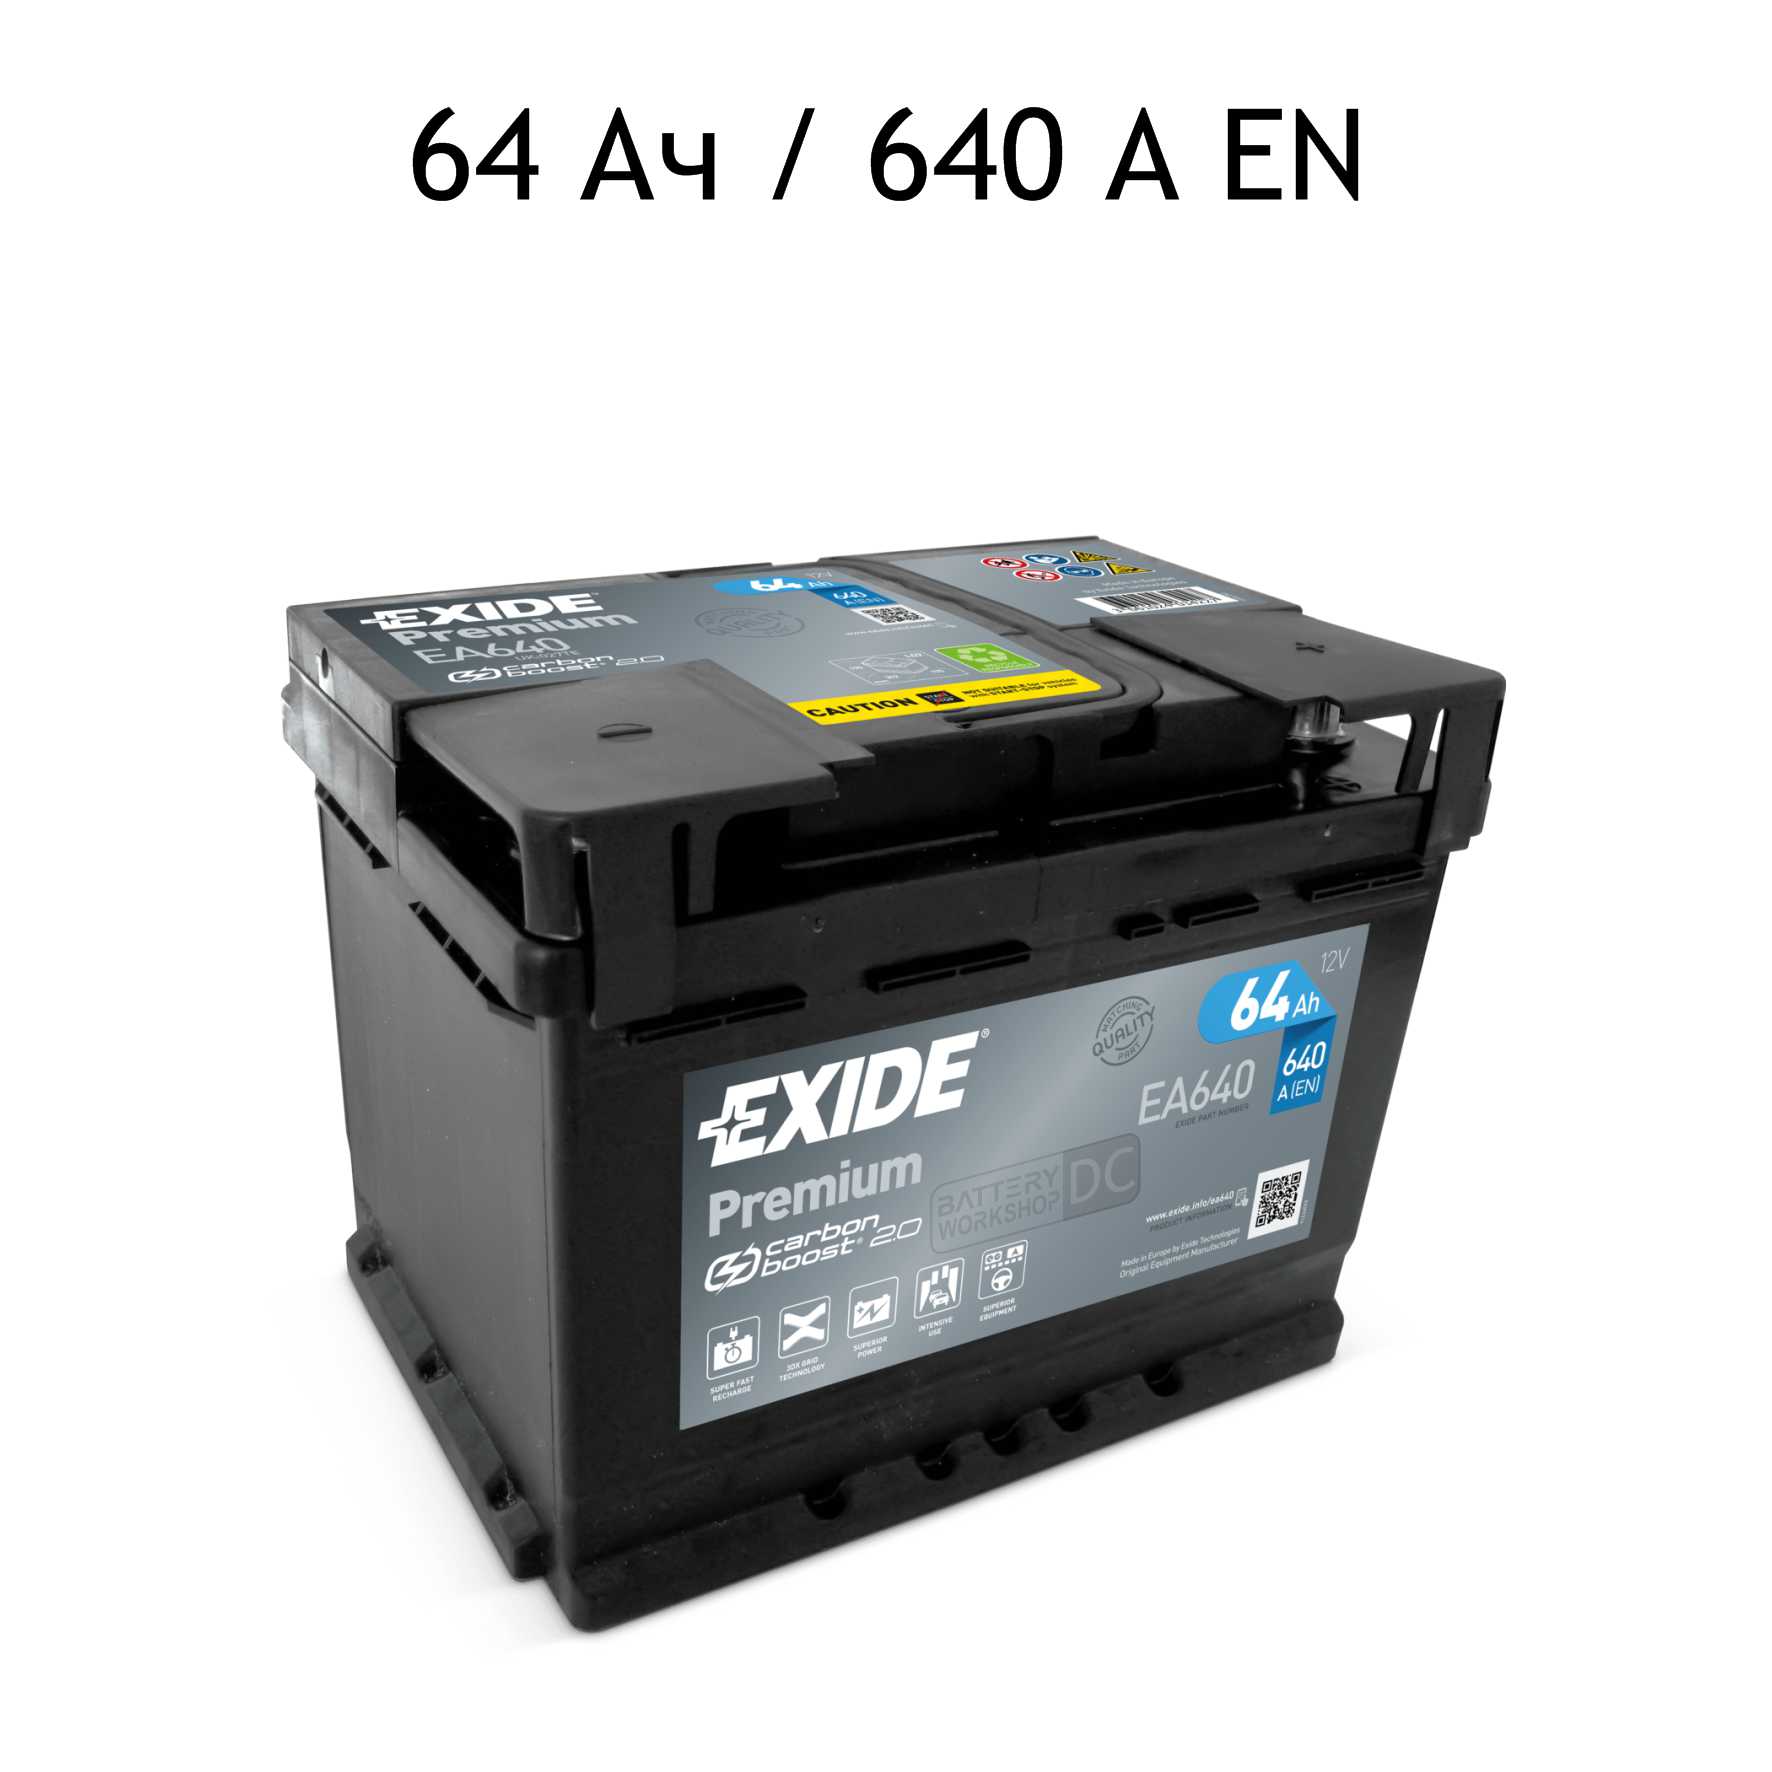 Аккумулятор Exide Premium EA640 на 64Ah - кто производитель и